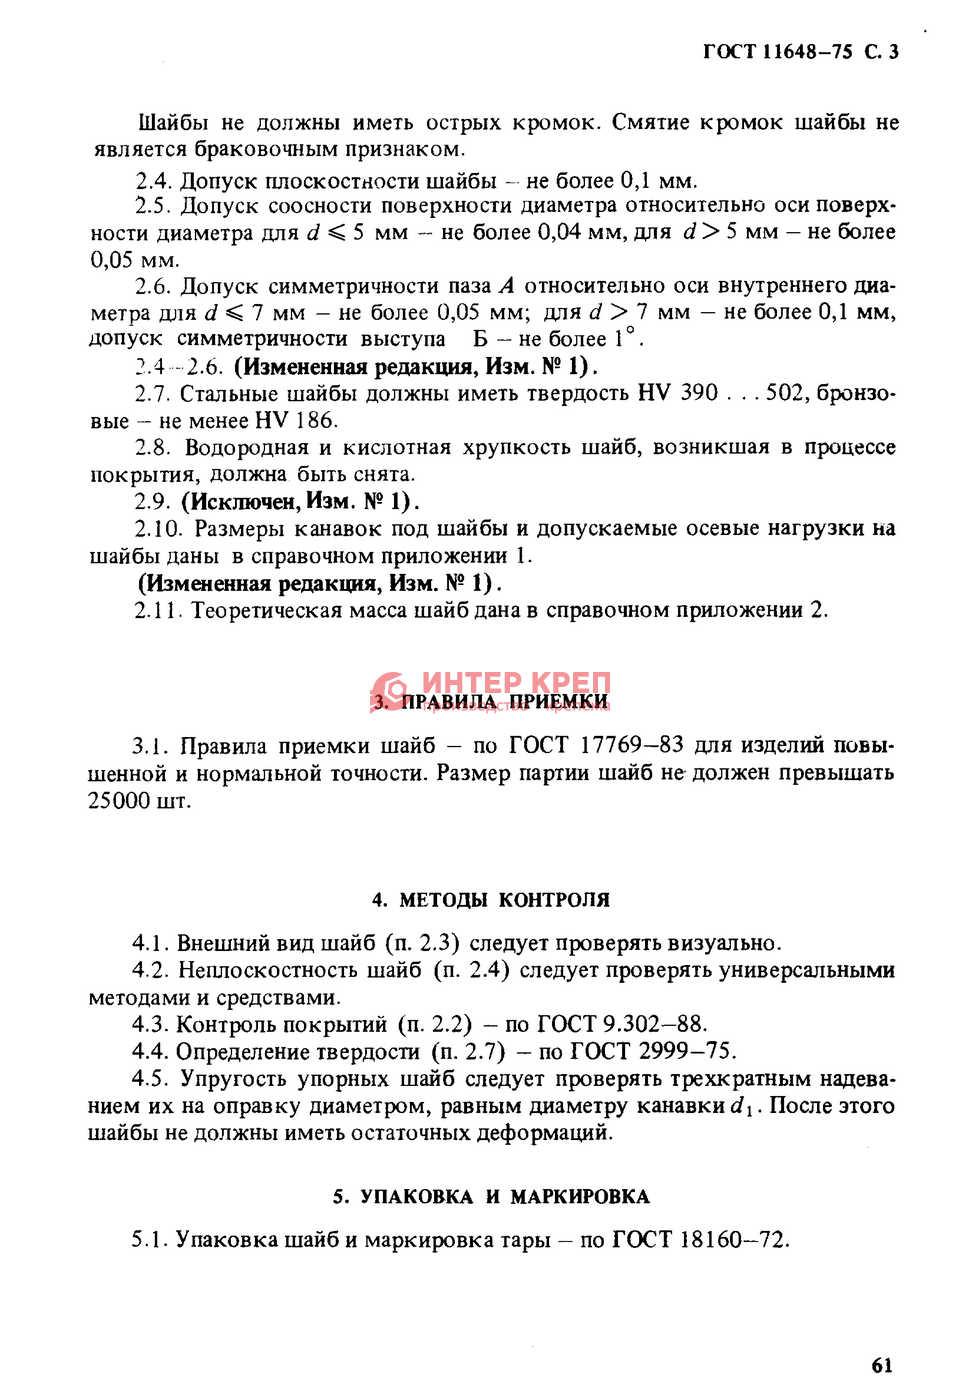 Шайбы упорные быстросъемные ГОСТ 11648-75  в Екатеринбурге: цена .